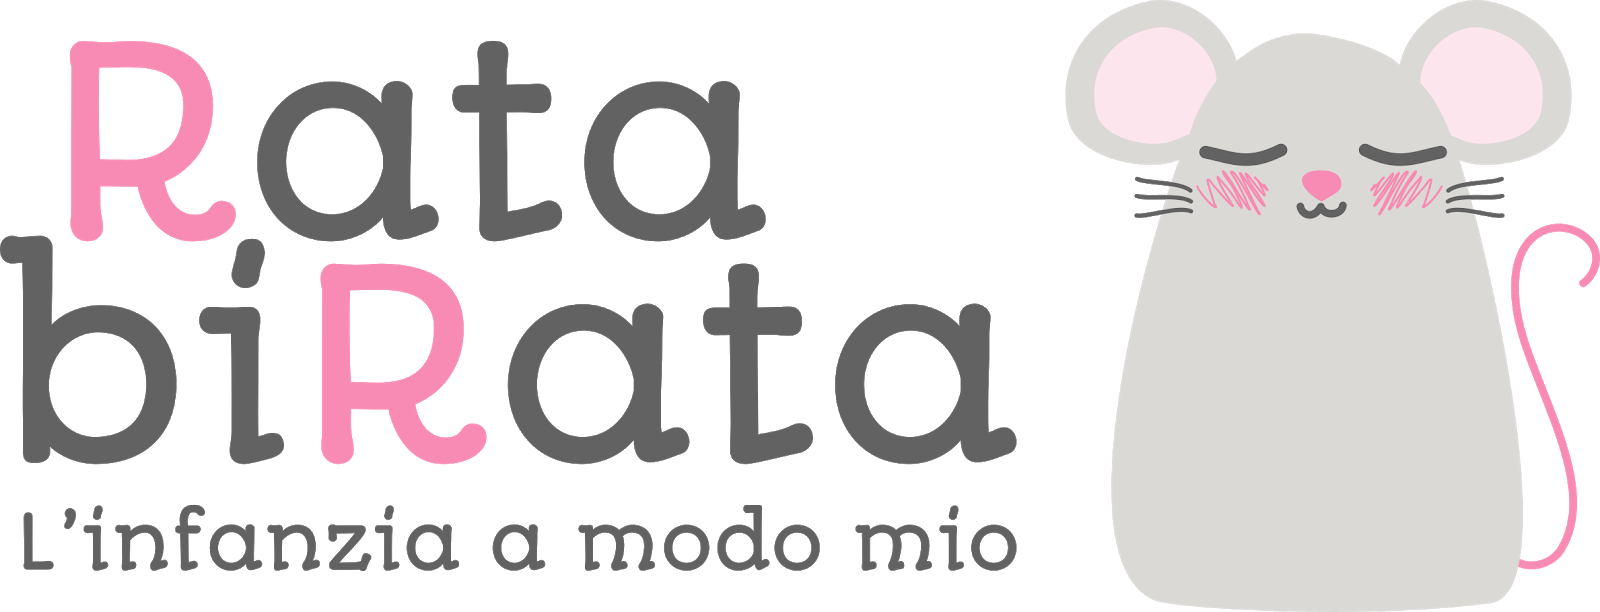 RatabiRata